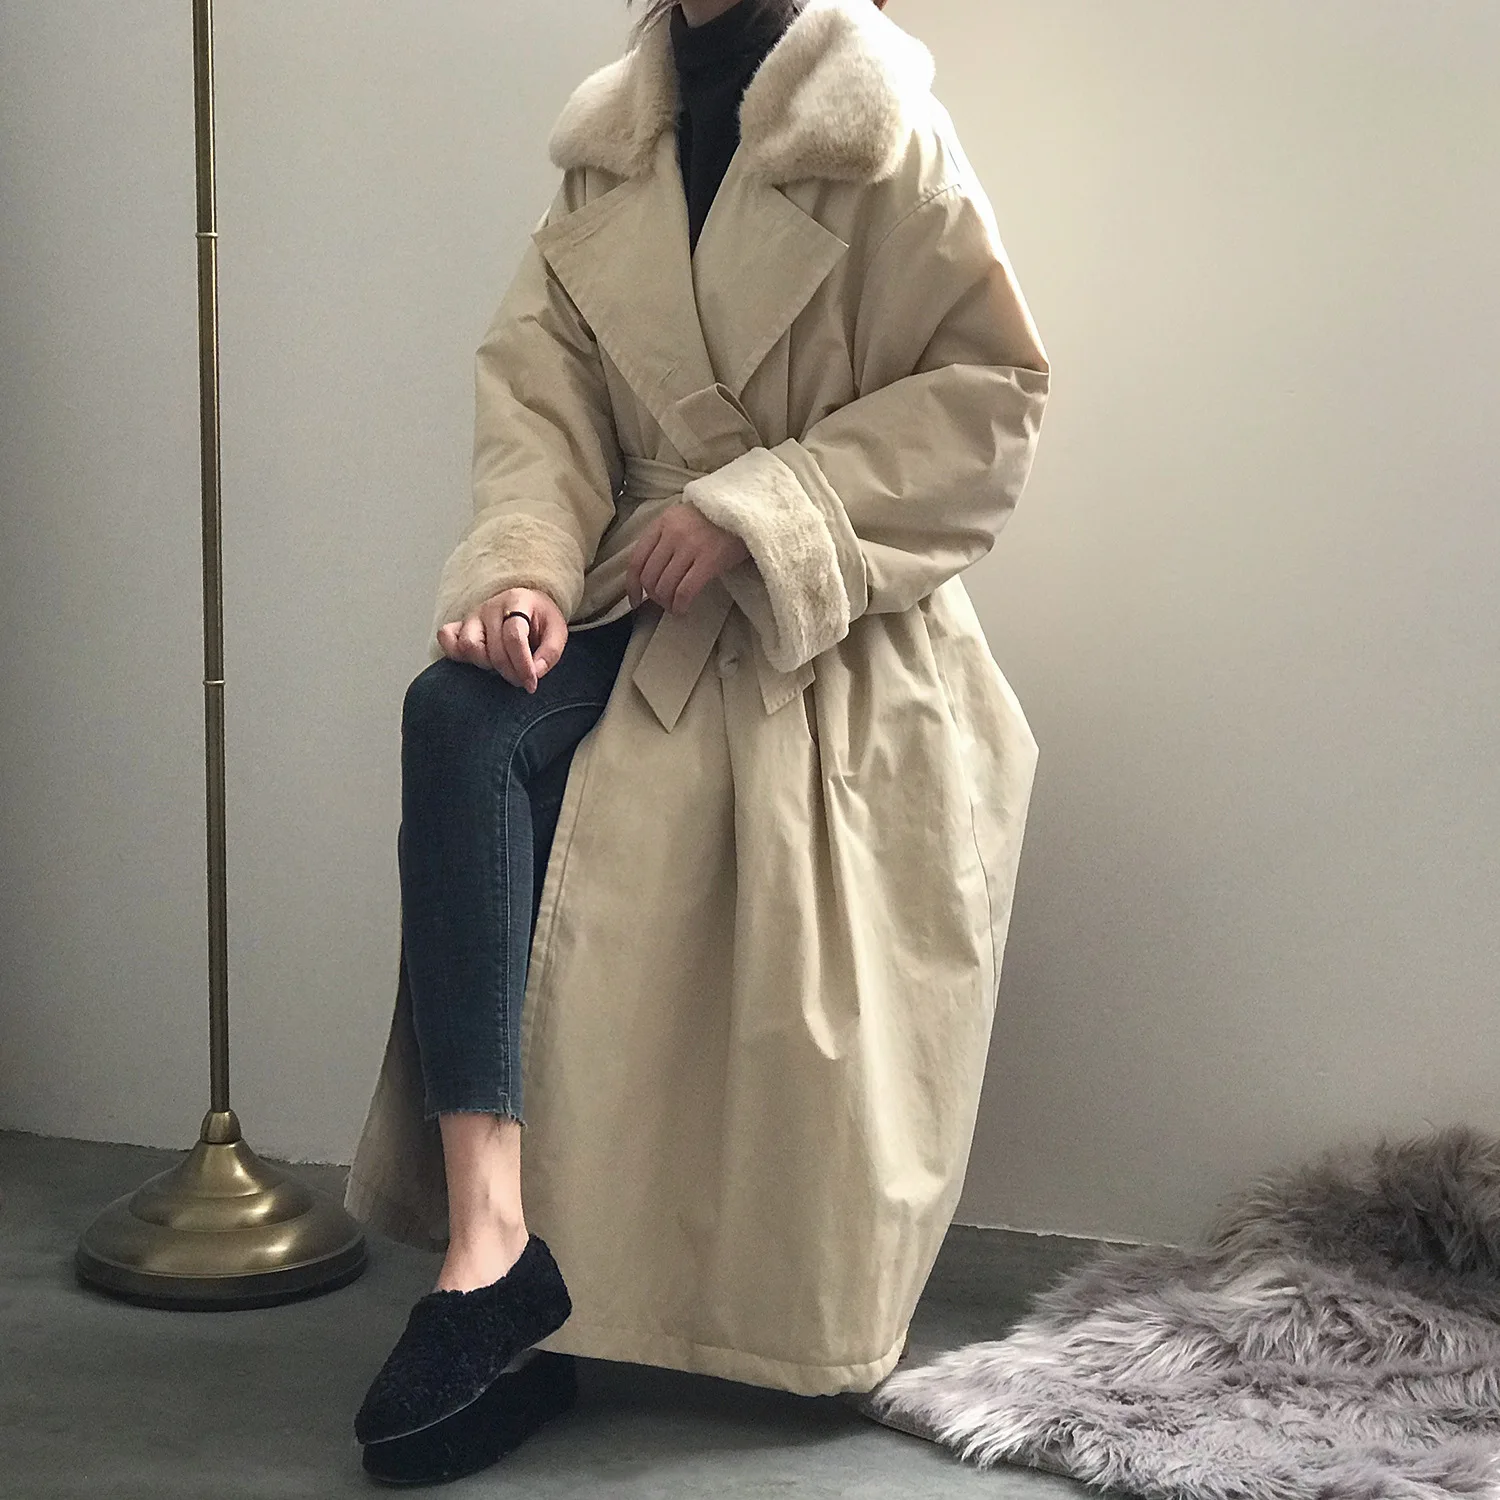 Зимний модный двубортный Тренч средней длины, пальто из искусственного меха норки, бархатное пальто с воротником, женская верхняя одежда из соболиного бархата